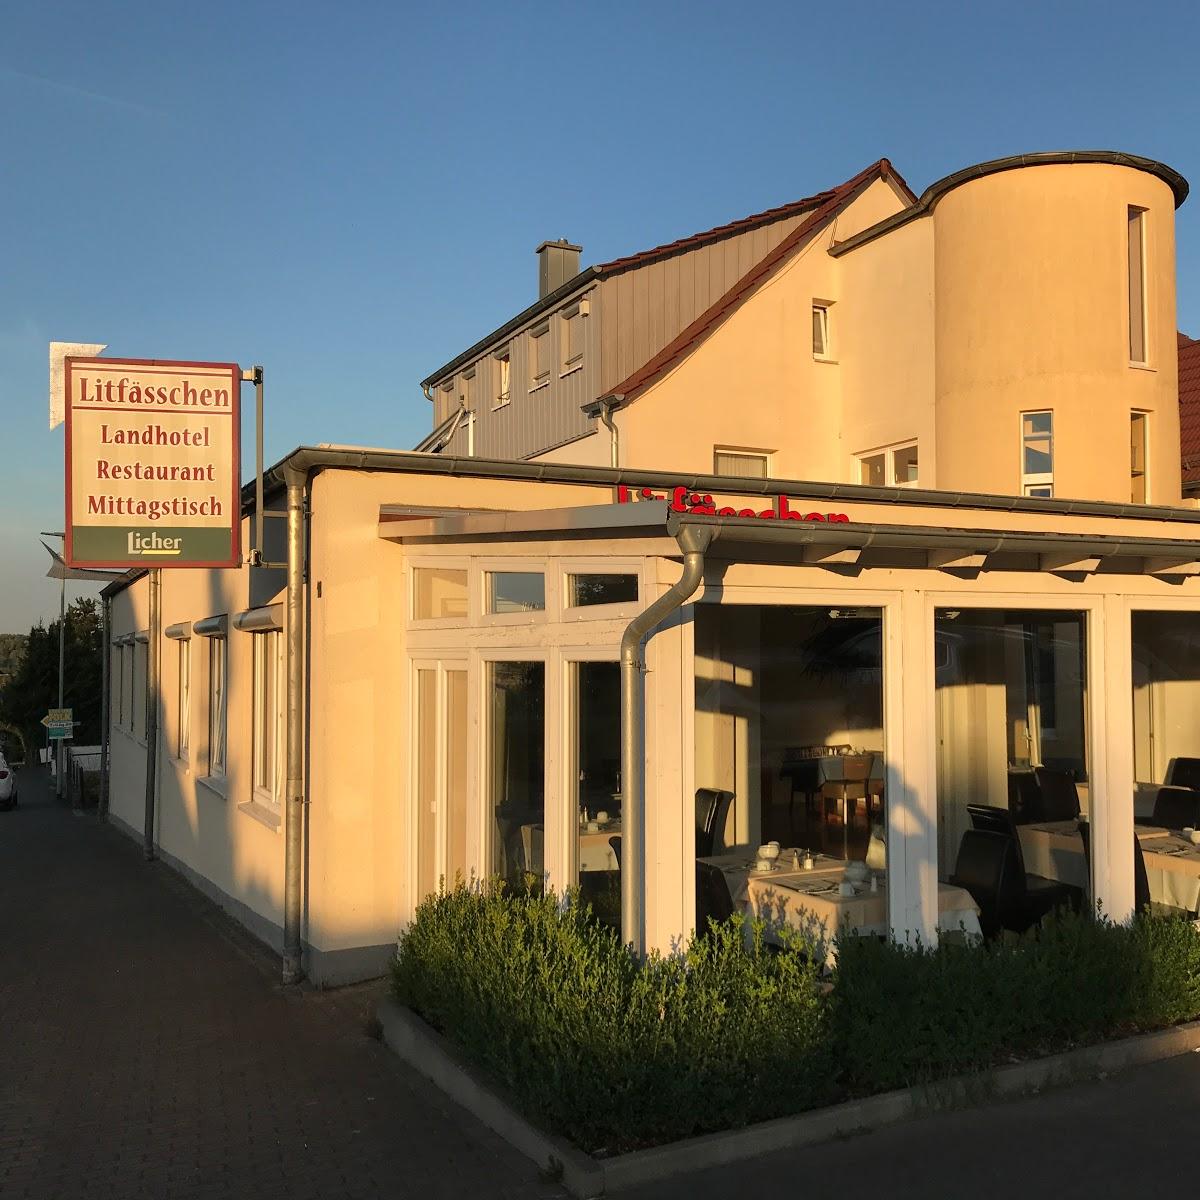 Restaurant "Landhotel Litfässchen" in  Mücke